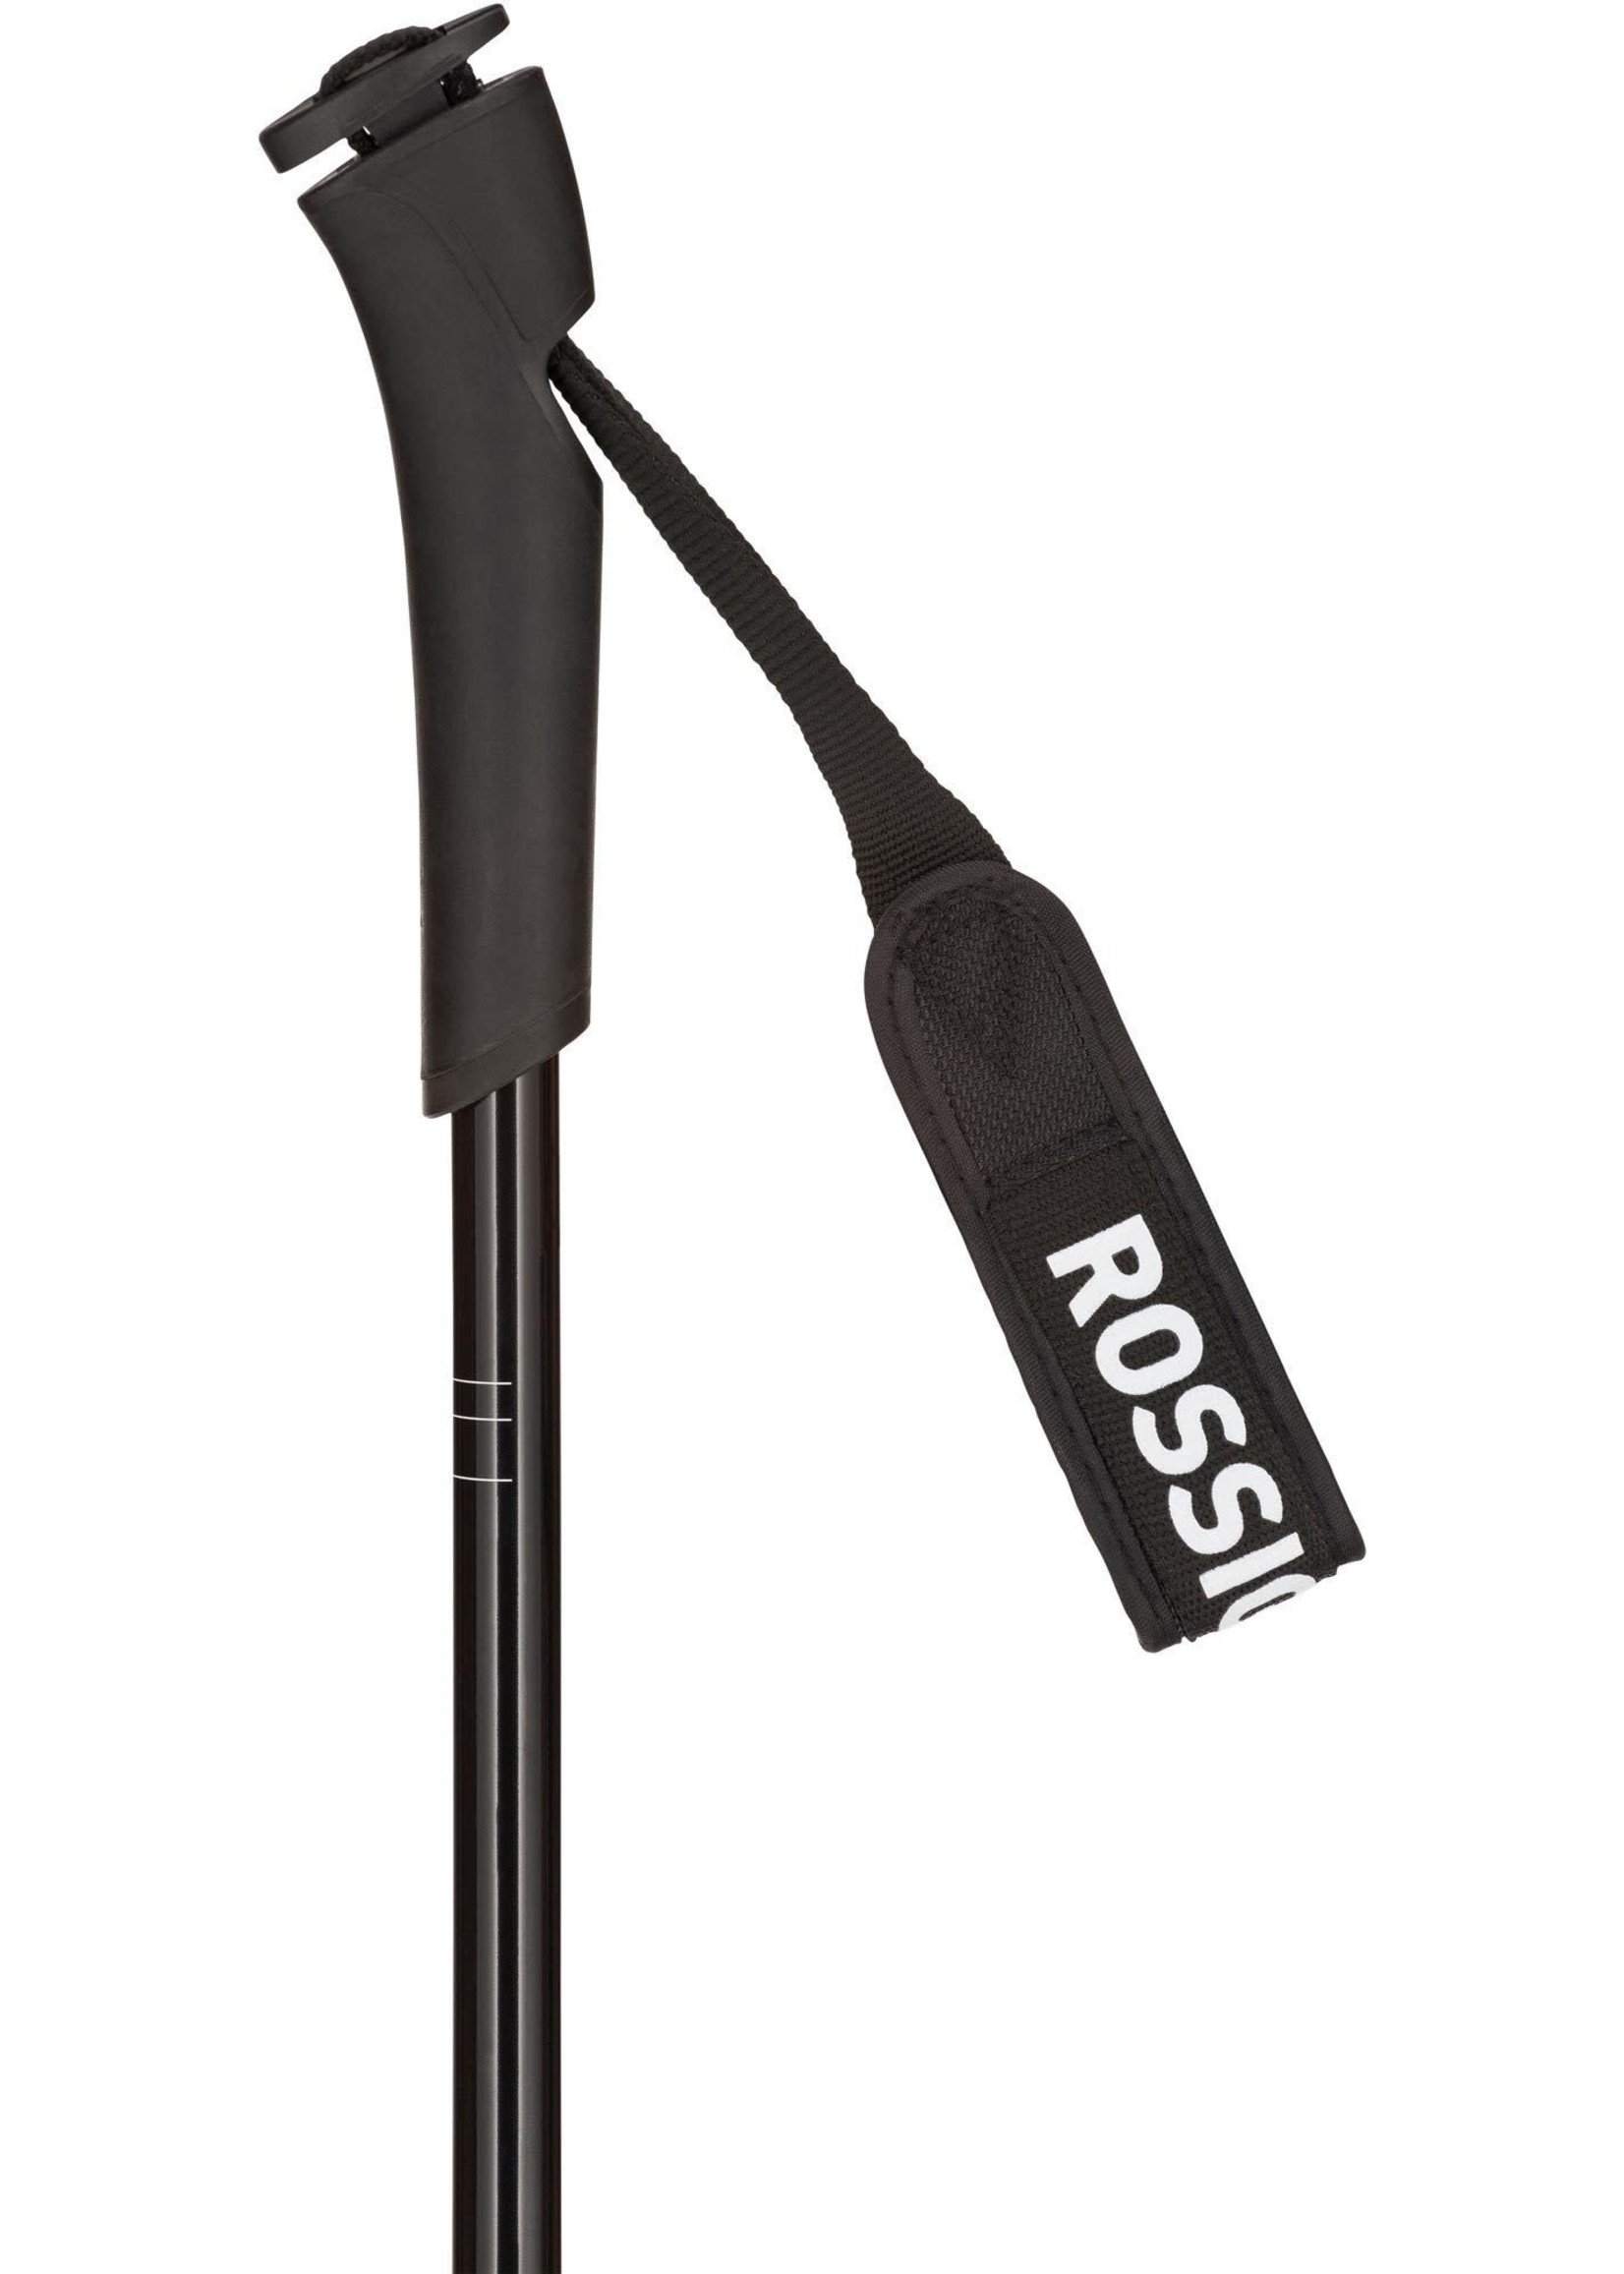 ROSSIGNOL Bâtons de ski back-country ajustables Adjustable BC 100 2020